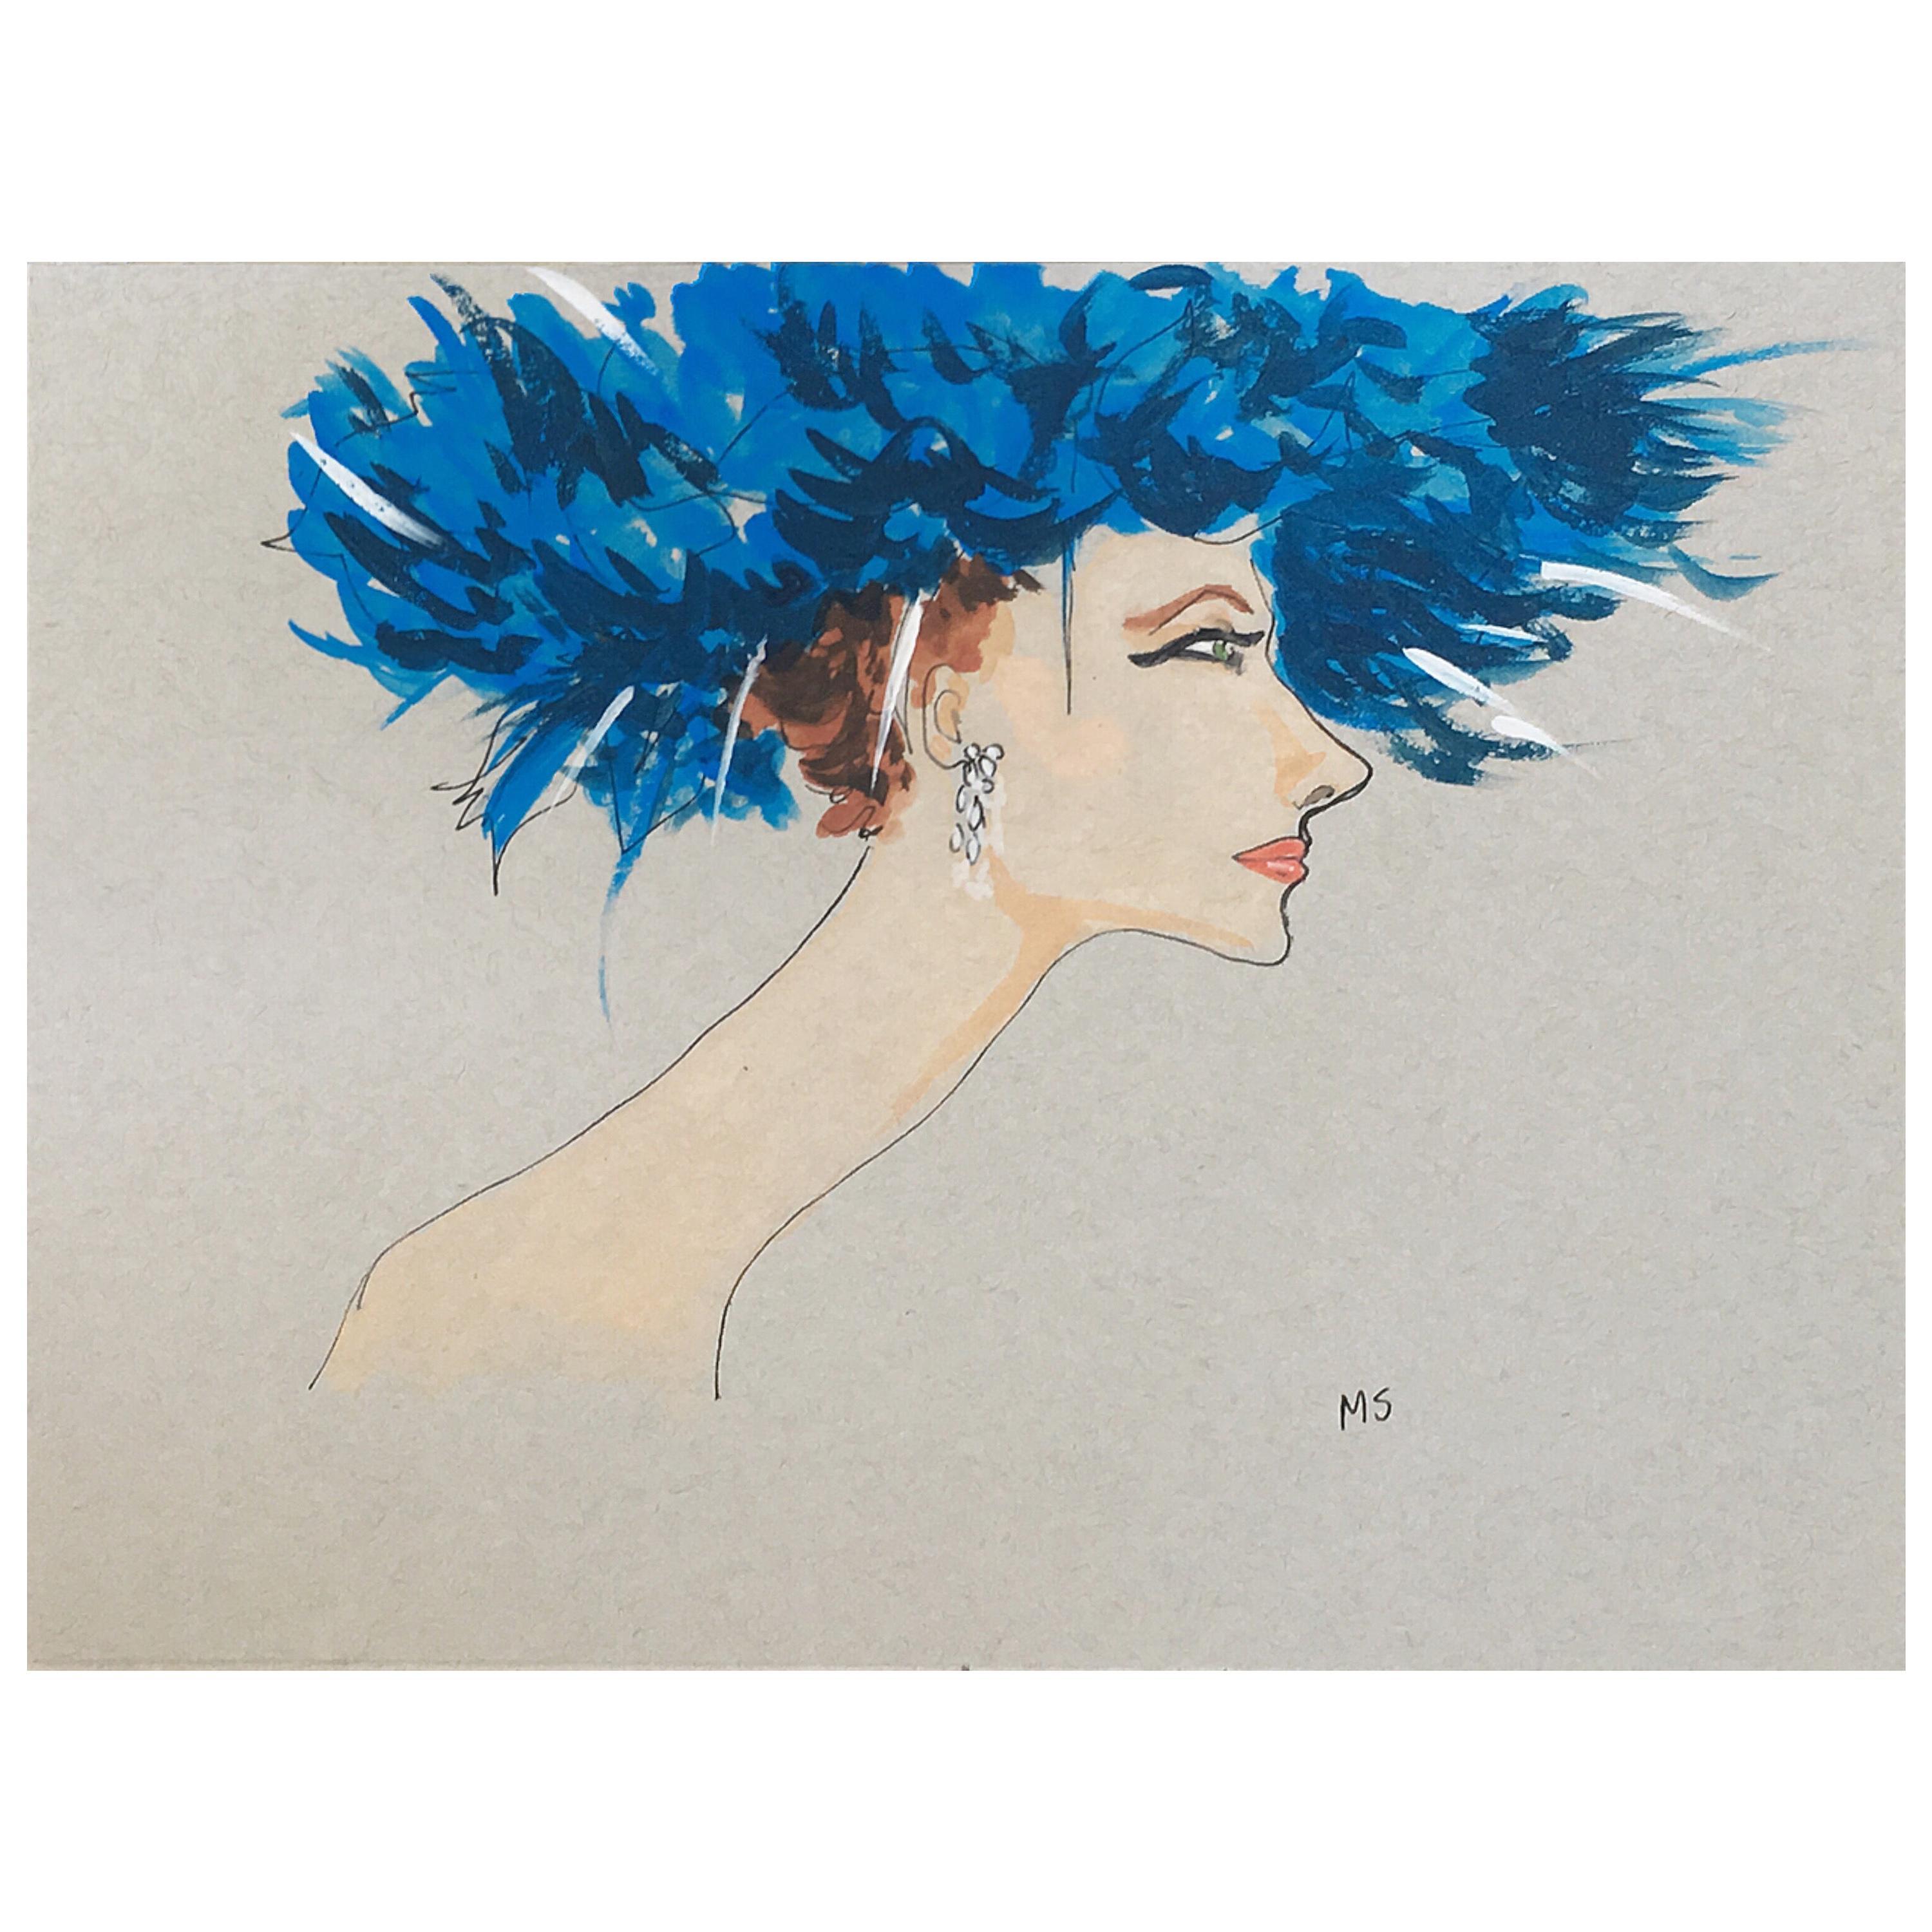 Manuel Santelices Portrait - Suzy Parker in a Blue Hat. Watercolor fashion portrait on archive paper.